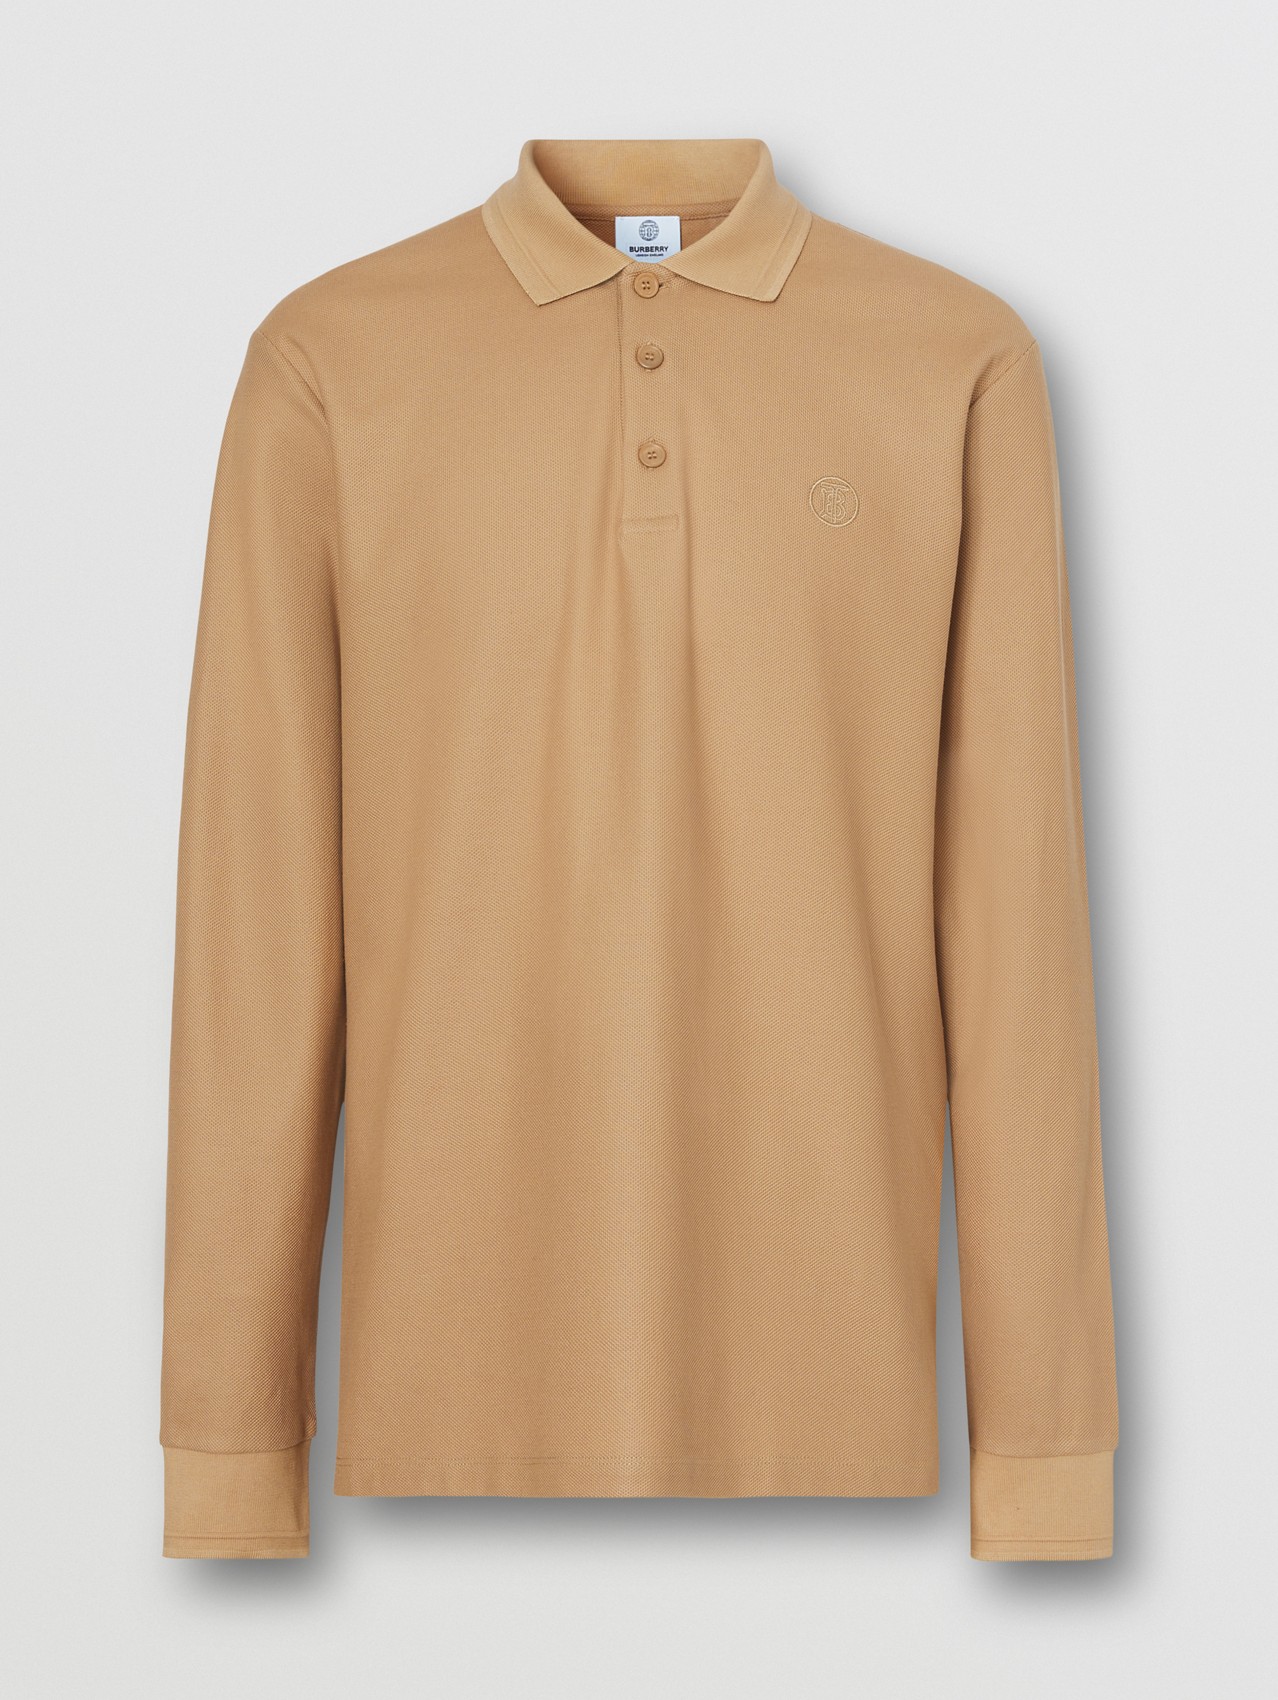 Long-sleeve Monogram Motif Cotton Piqué Polo Shirt in Camel